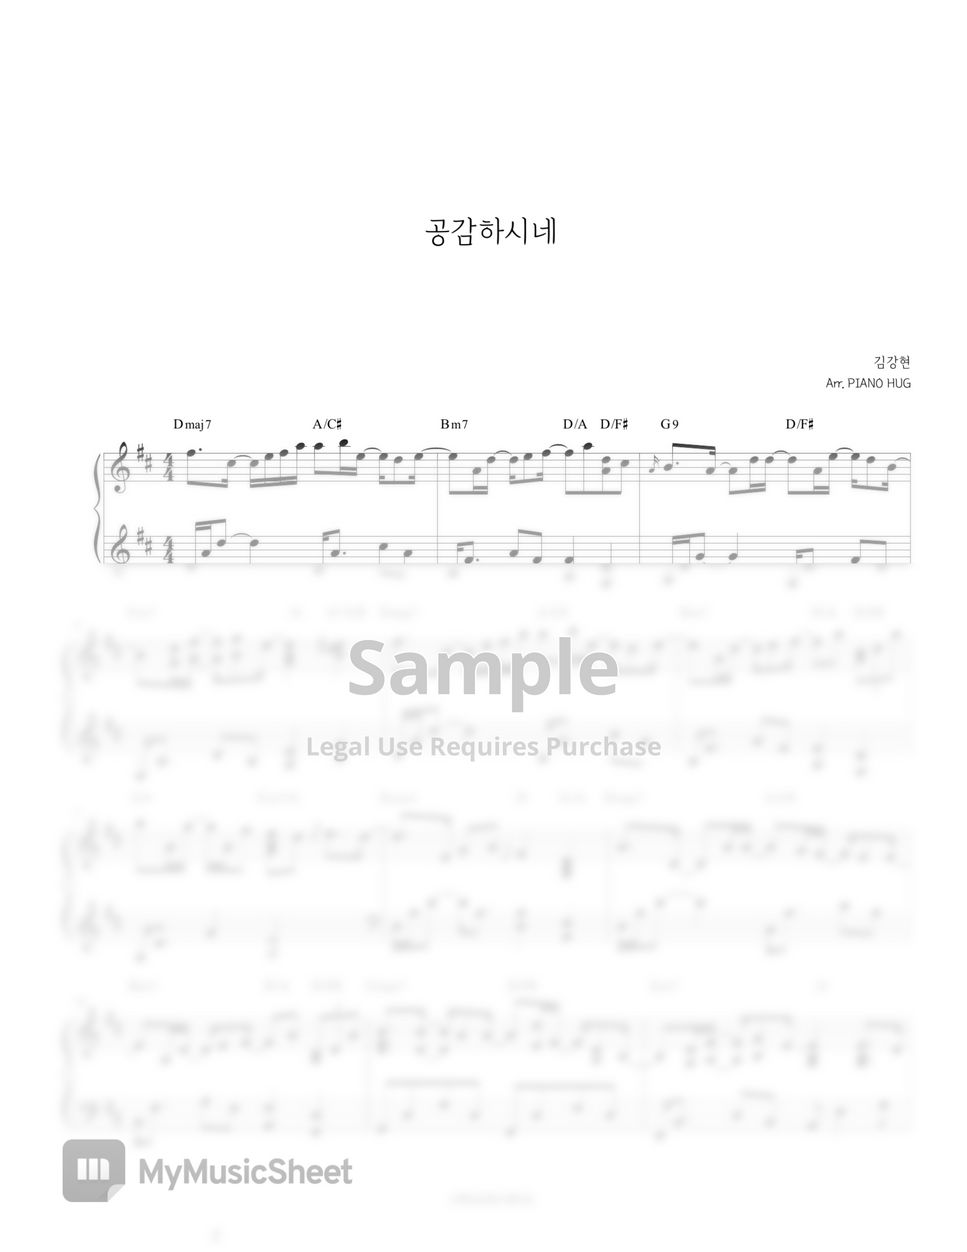 Kim Kang Hyun (김강현) - 공감하시네 by Piano Hug